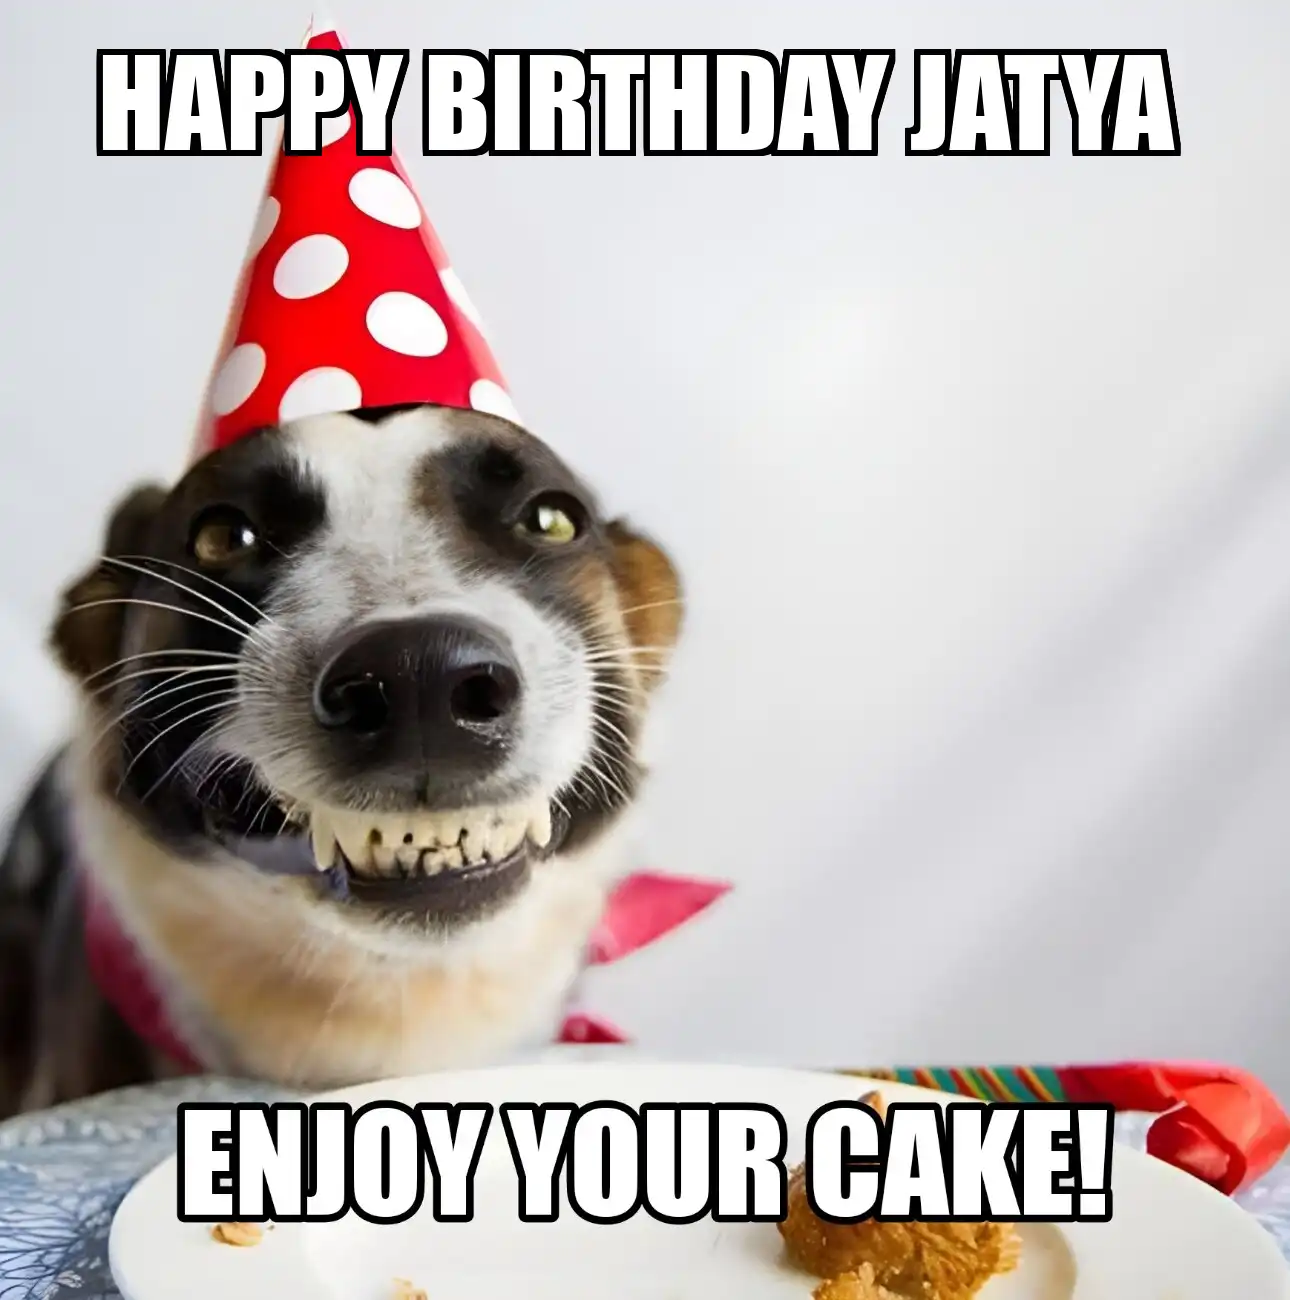 Happy Birthday Jatya Enjoy Your Cake Dog Meme